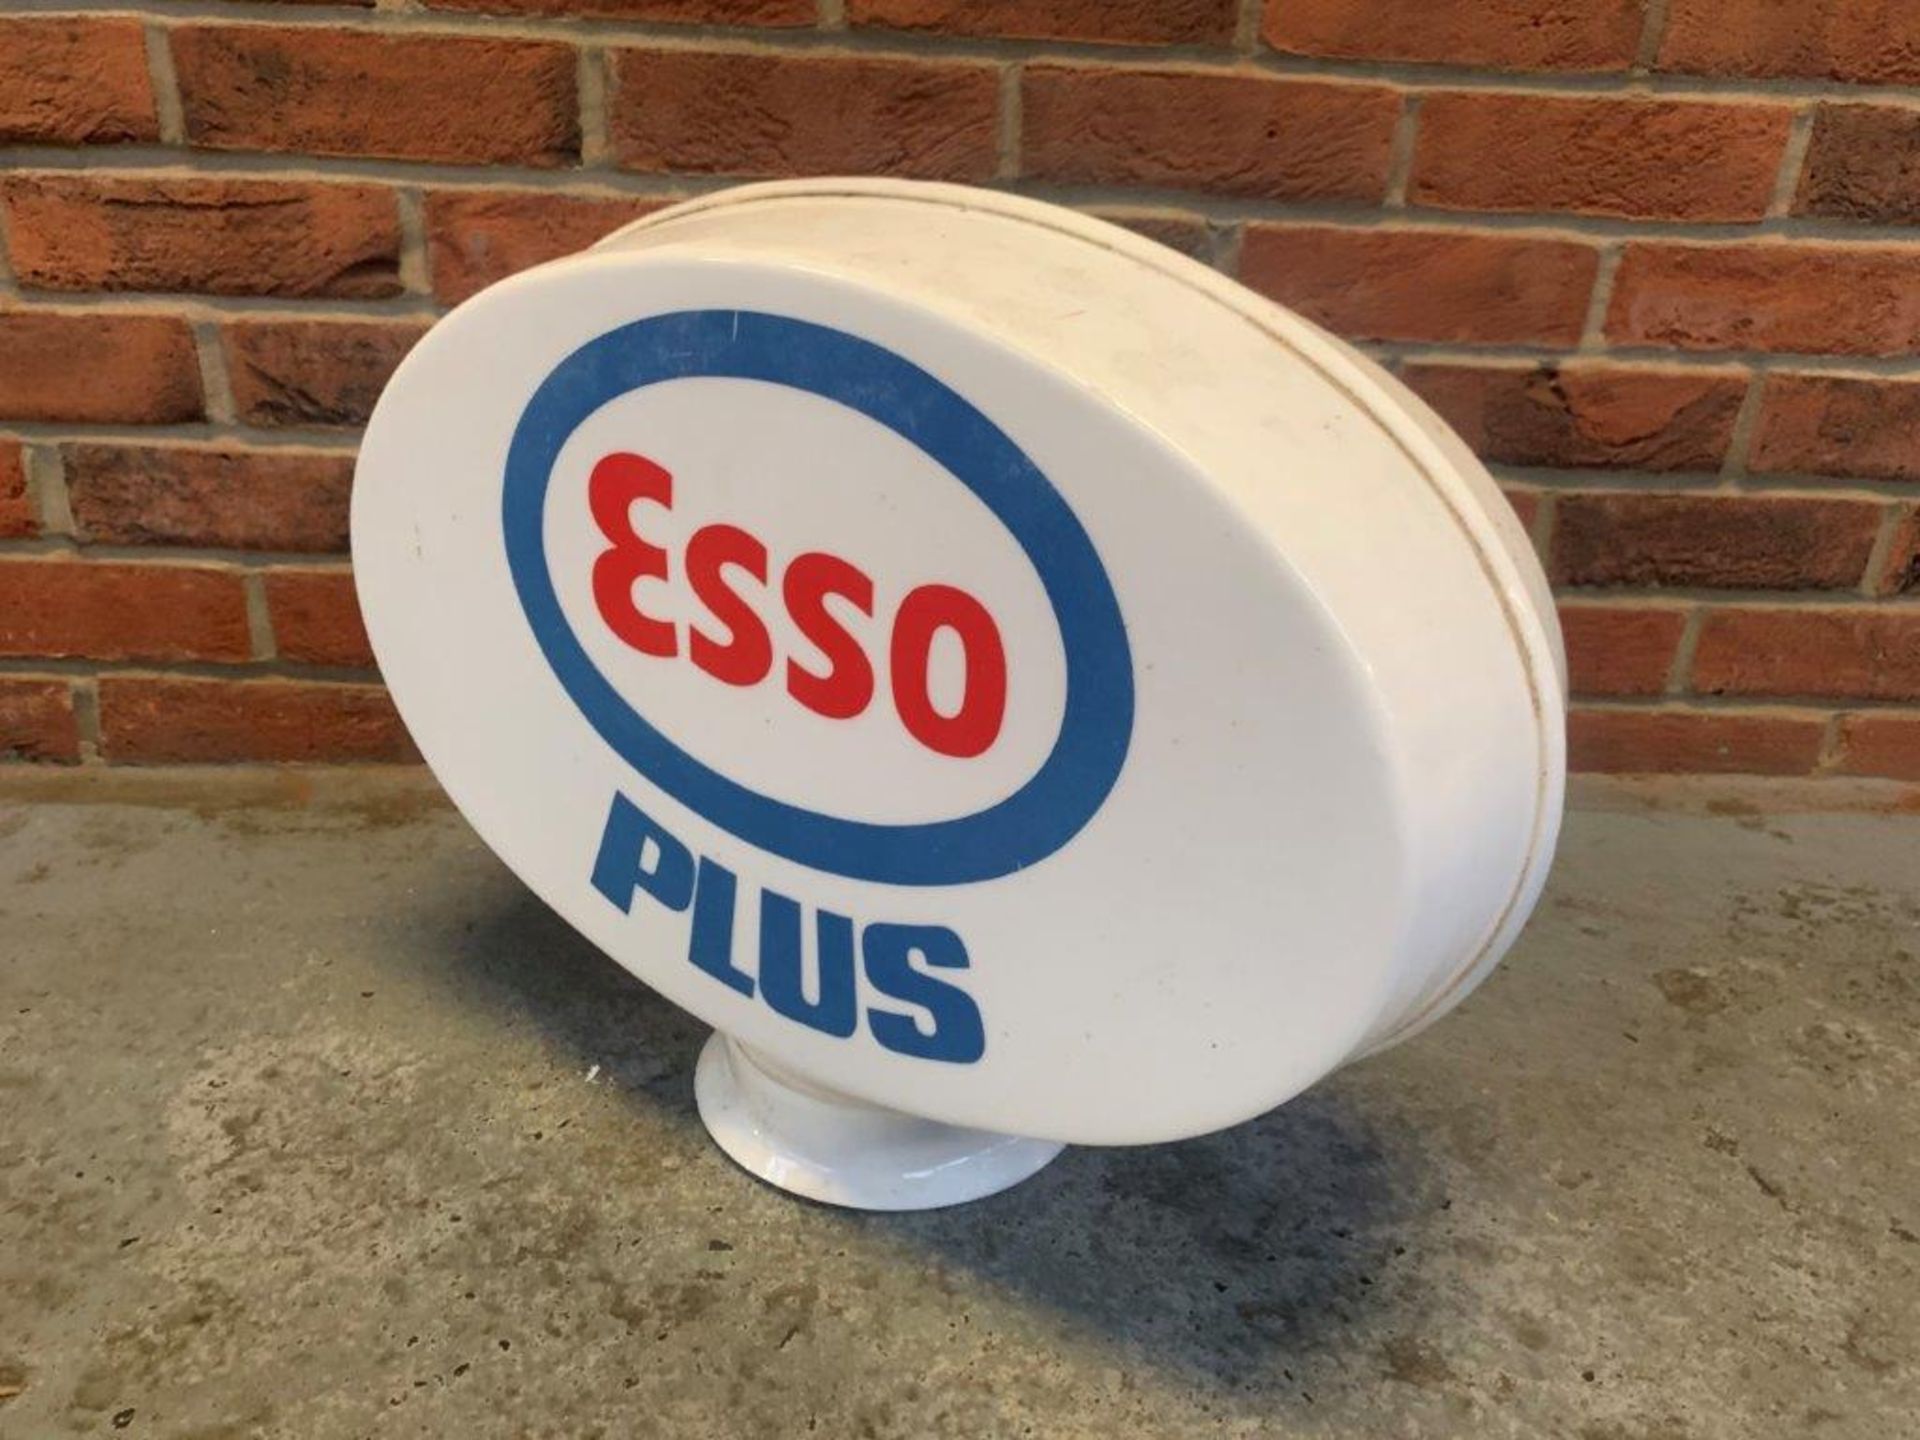 Esso Plus Original Petrol Globe - Image 3 of 6